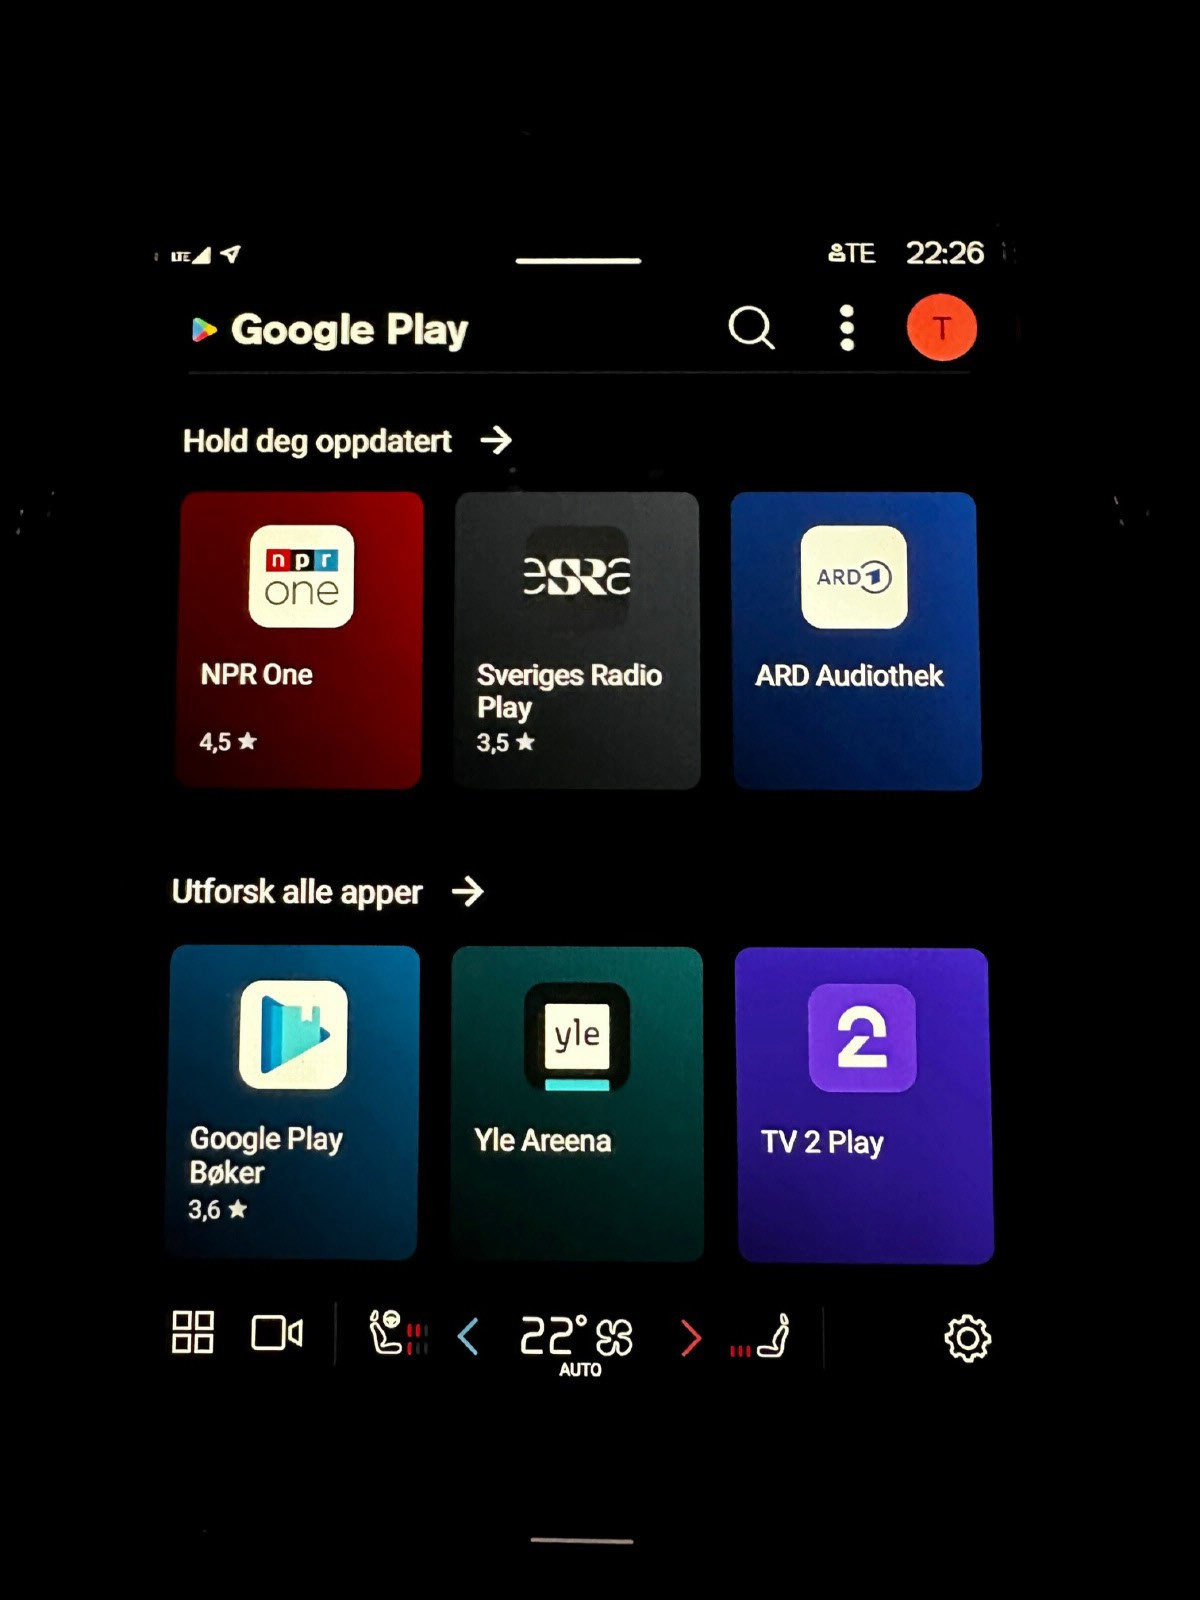 Google Play butikk for nedlasting av apper i bil